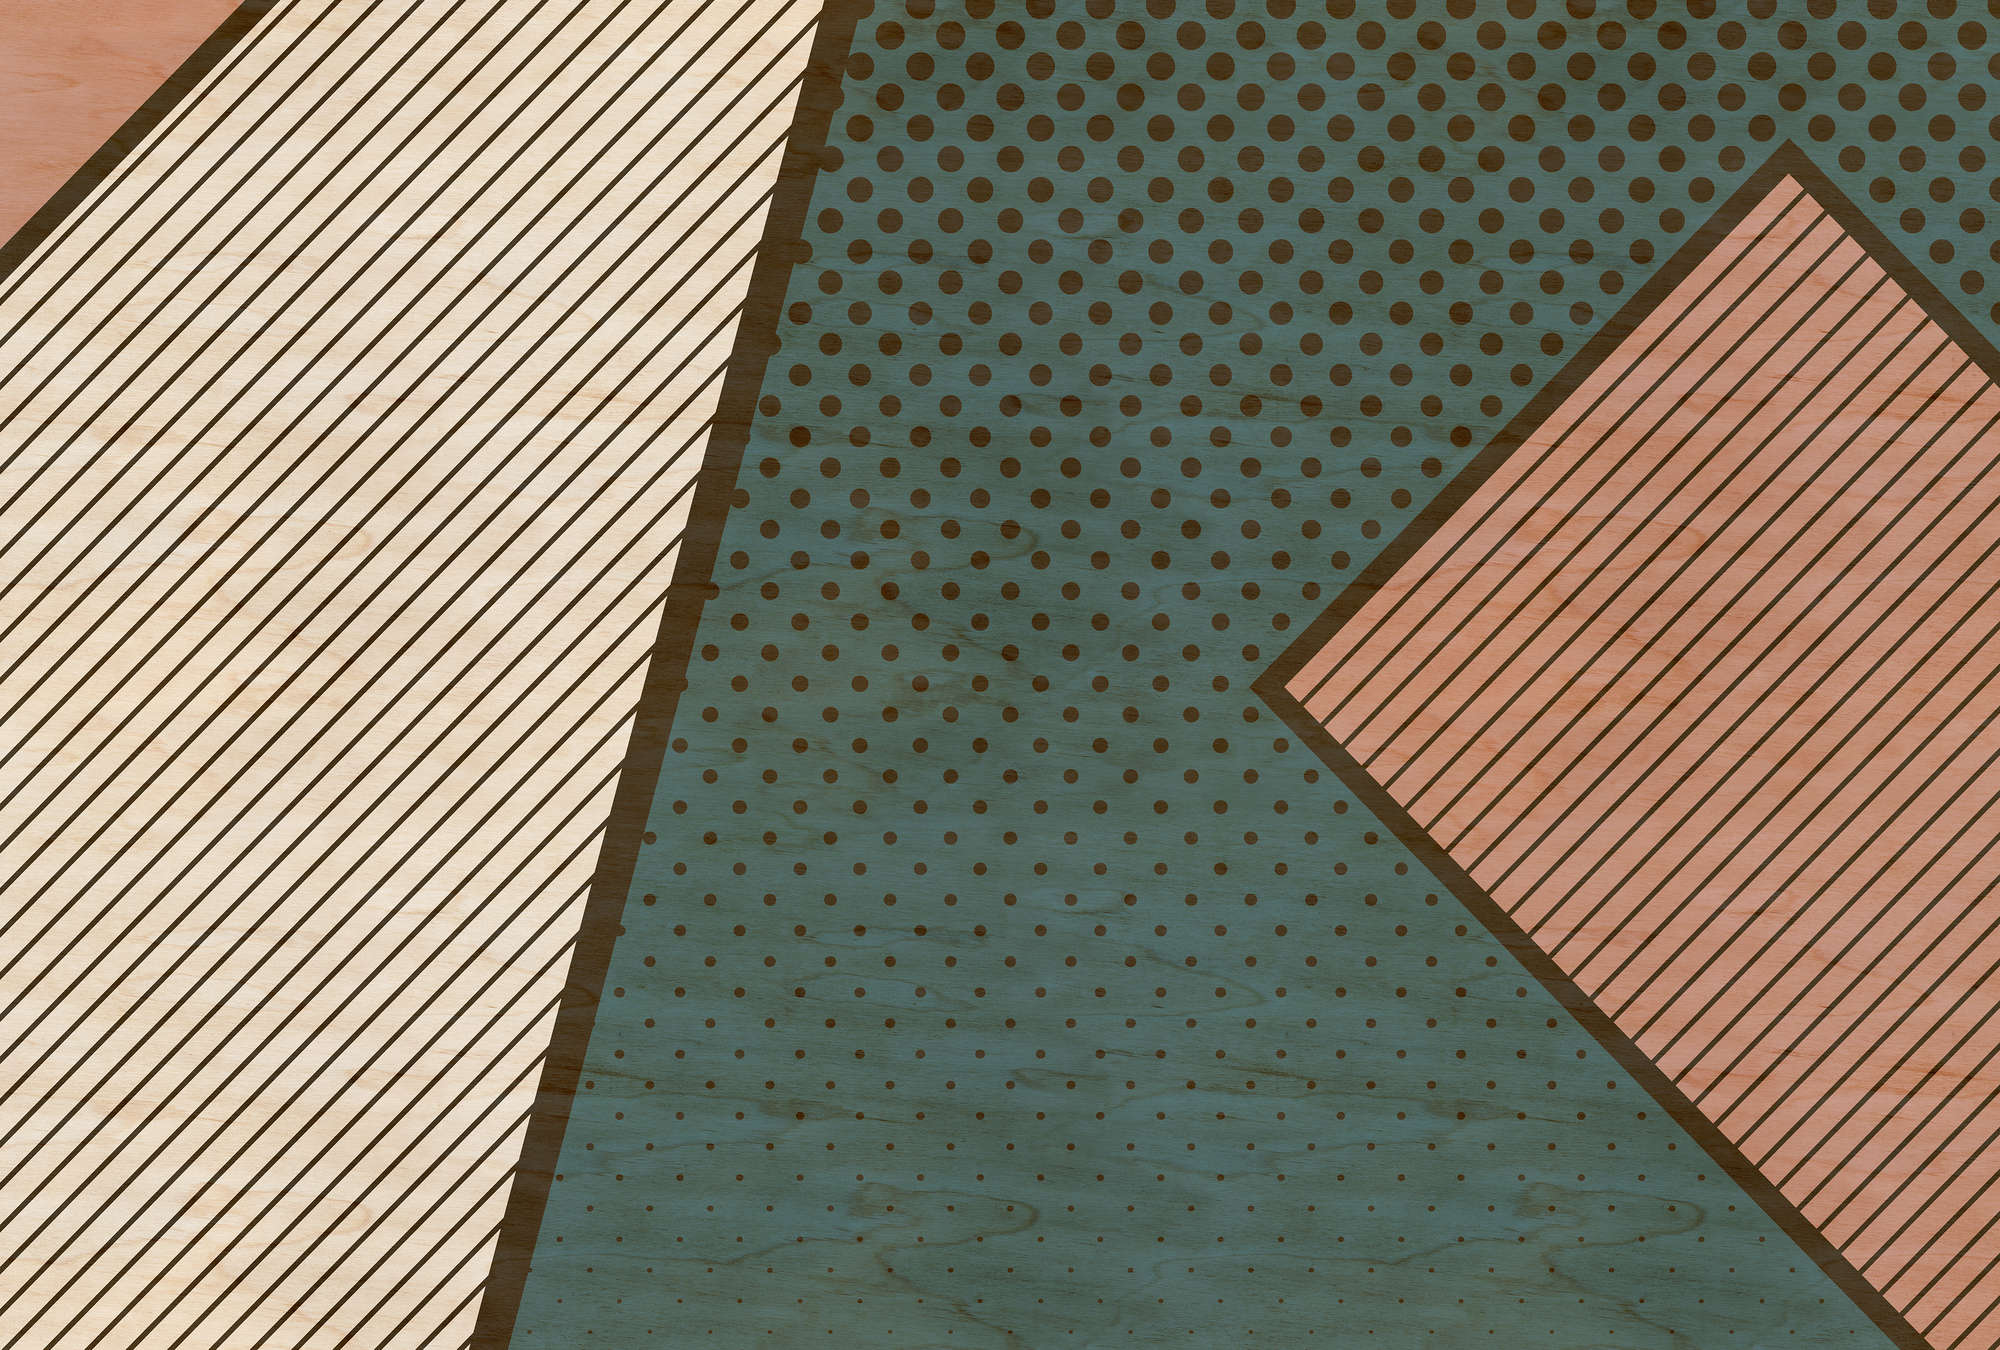             Bird gang 1 - papier peint à motifs, structure contreplaquée avec aplats de couleurs modernes - beige, rose | Intissé lisse mat
        